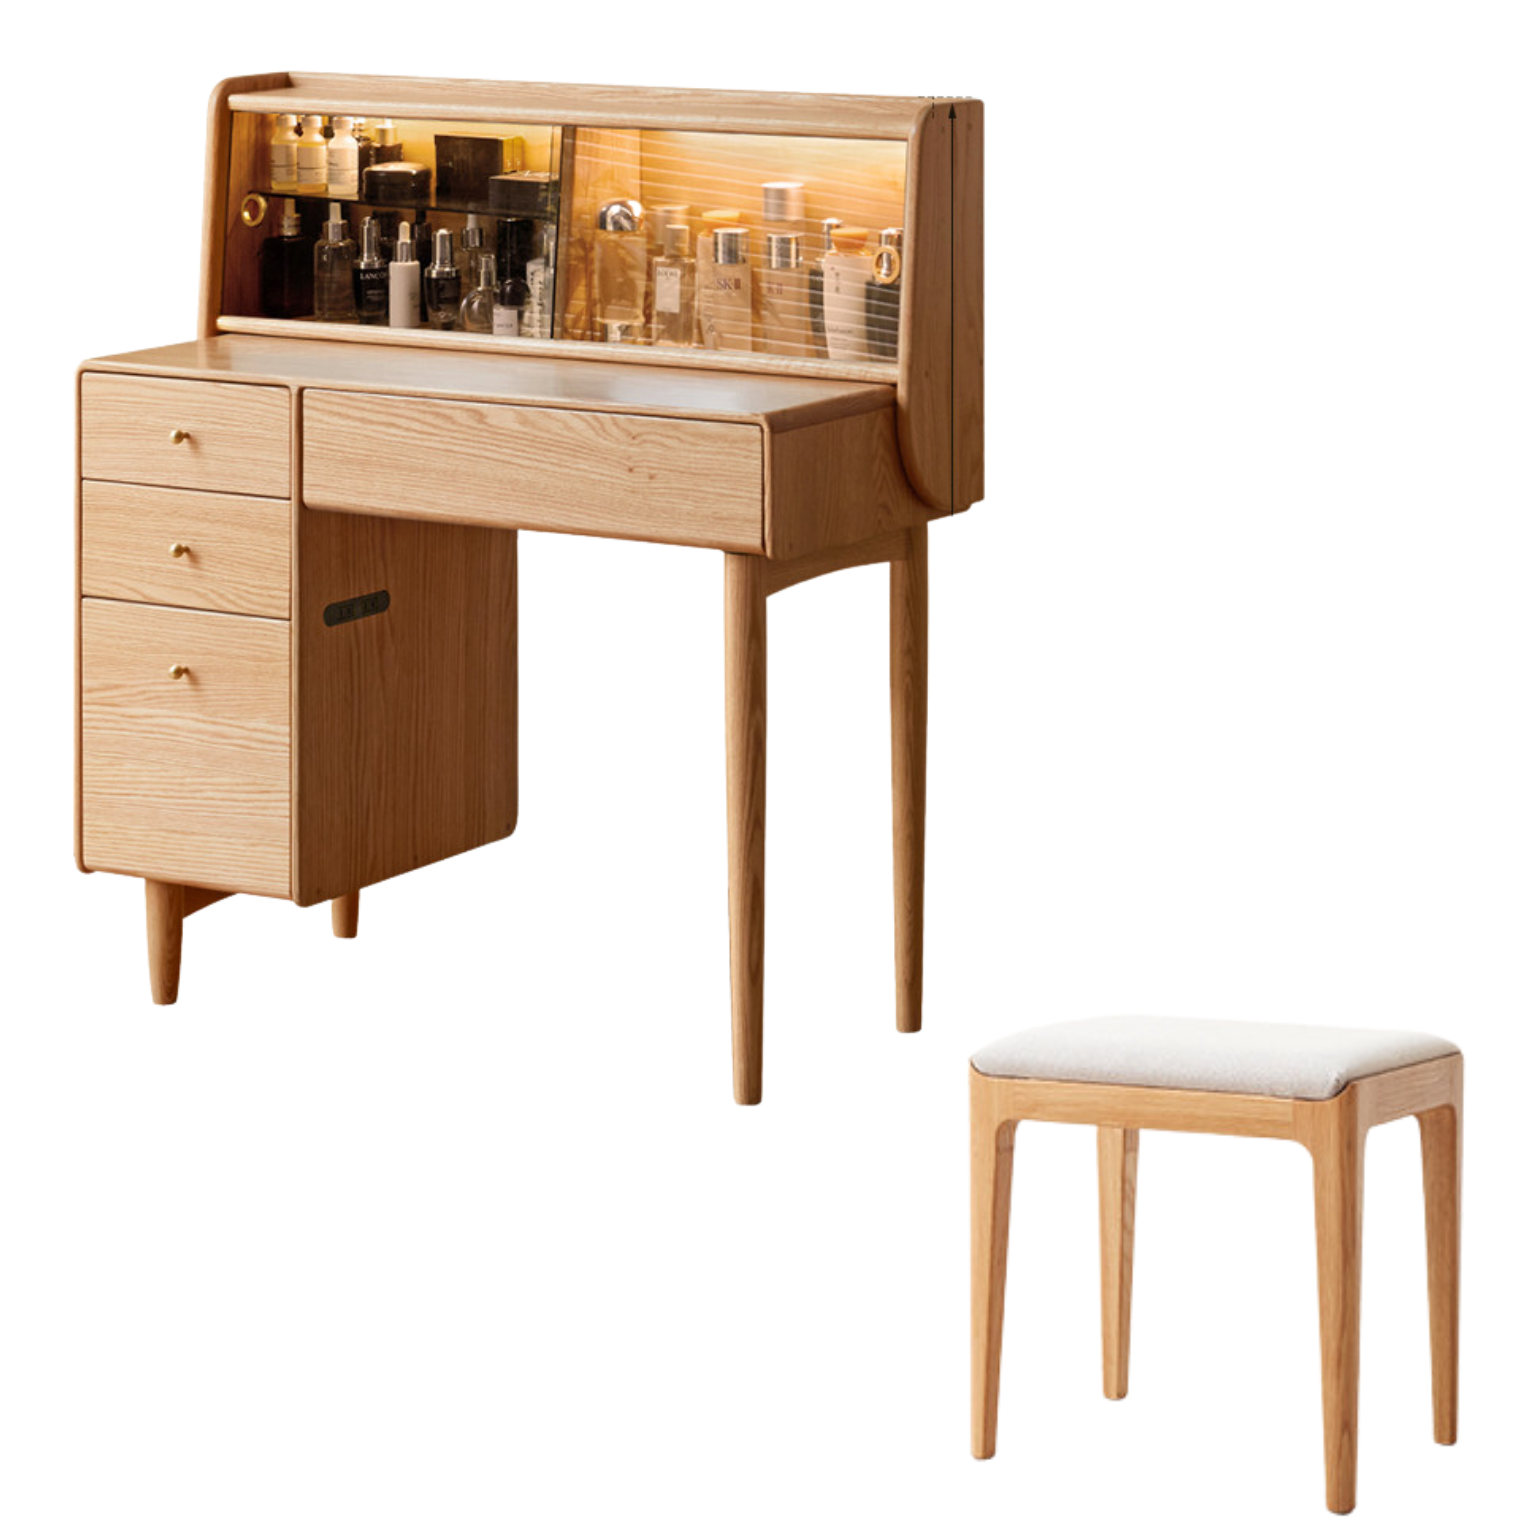 Oak solid wood dresser modern atmosphere with lights -